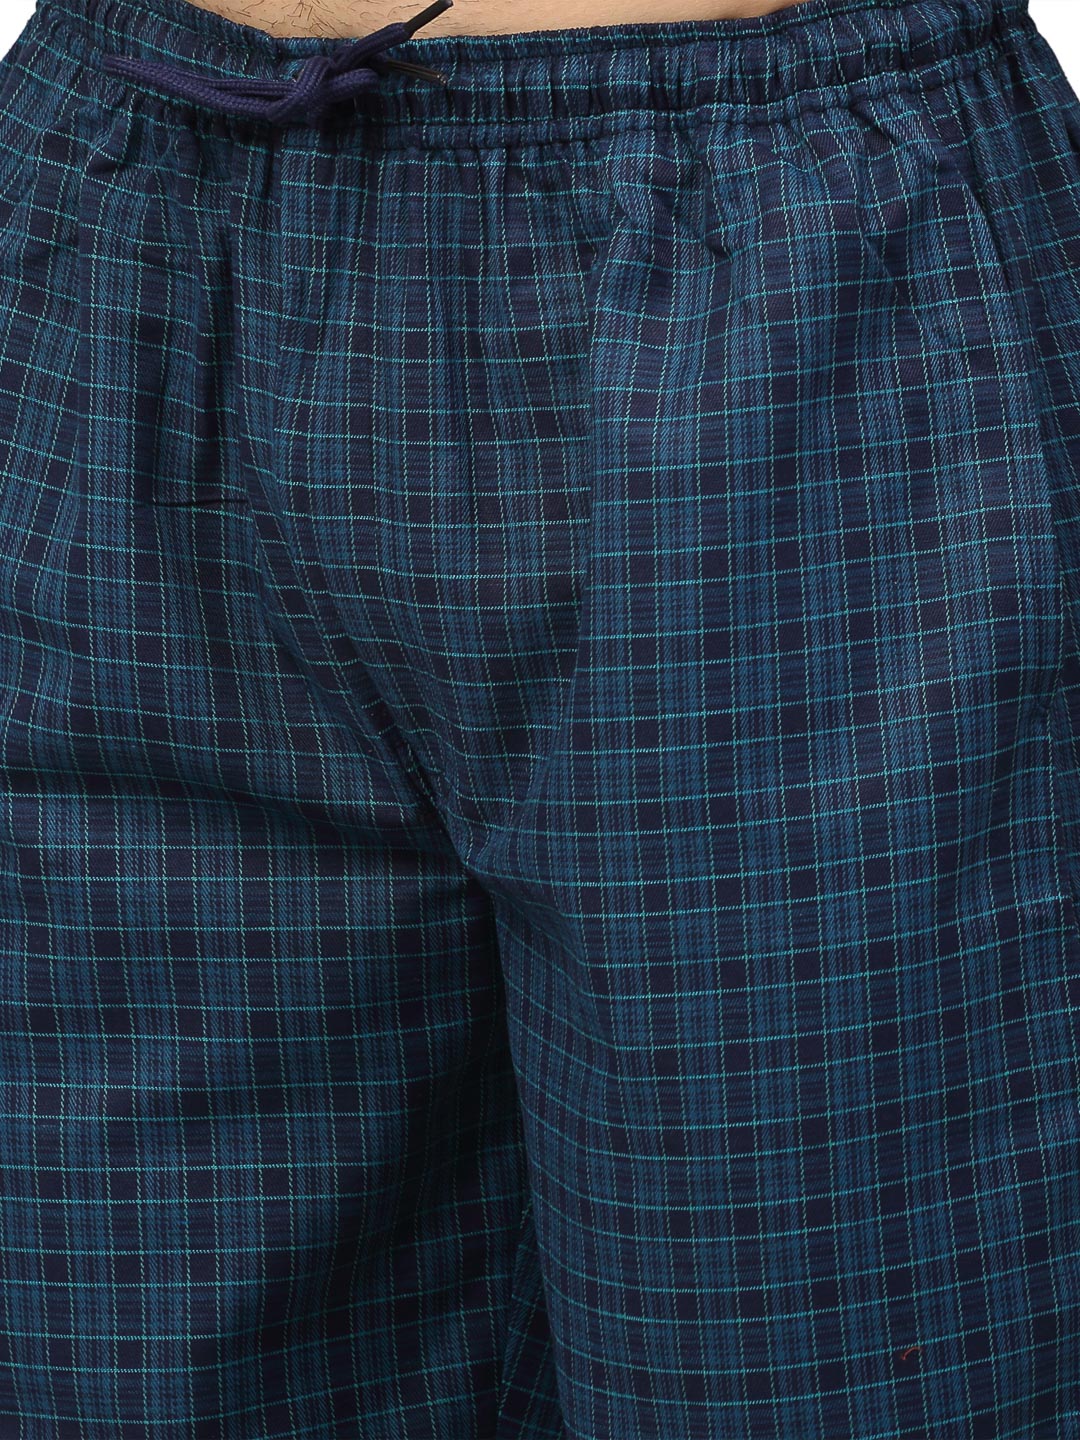 Jainish Men's Blue Cotton Checked Track Pants ( JOG 017Blue ) - Distacart